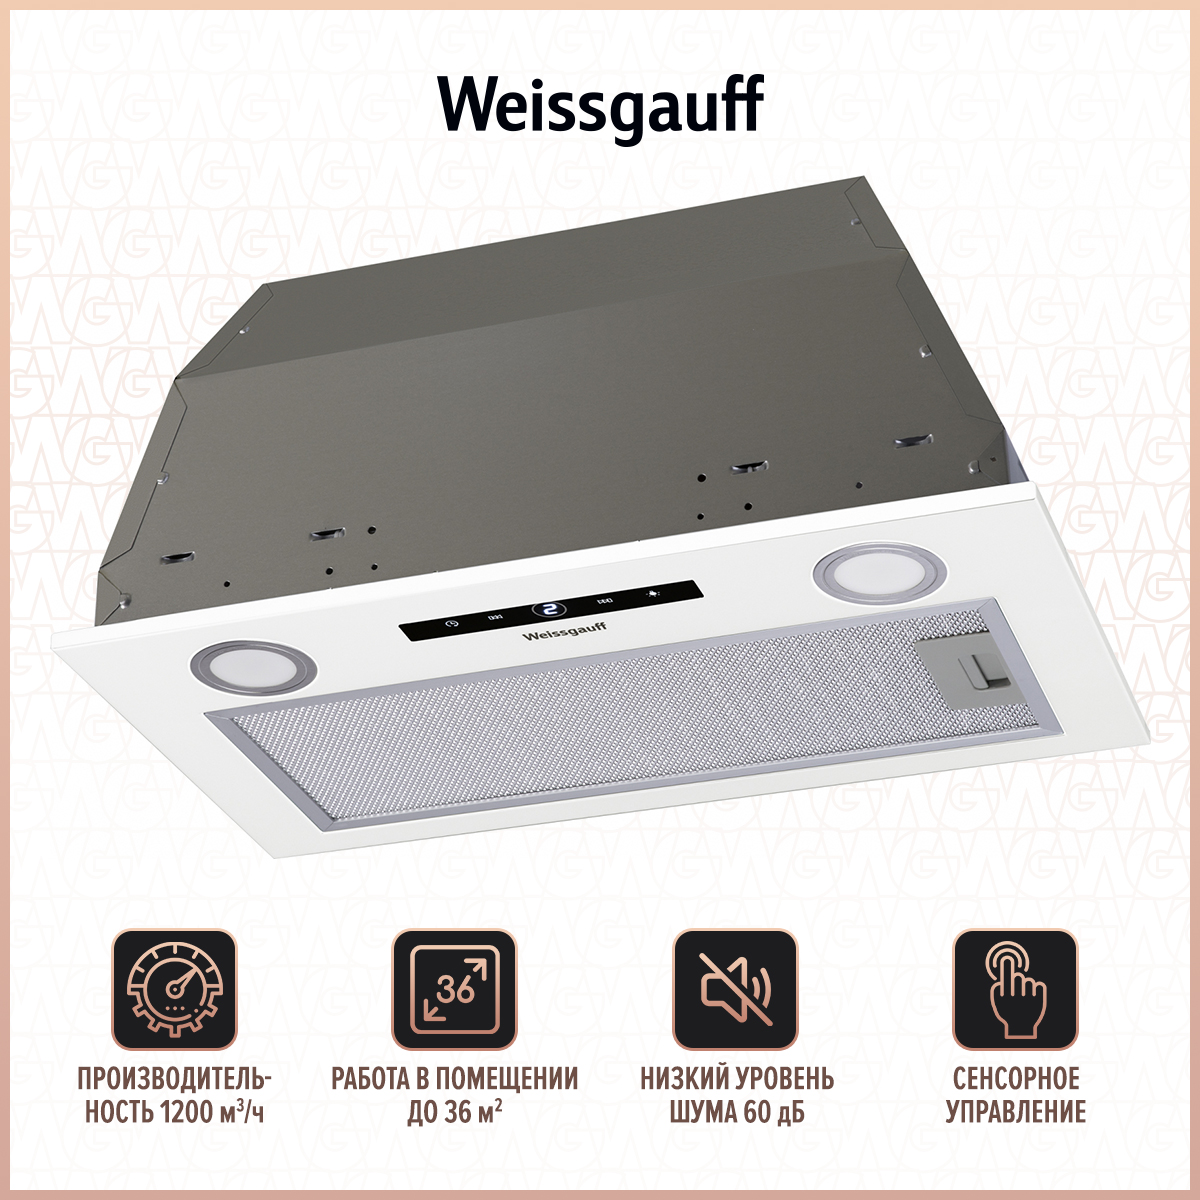 Вытяжка встраиваемая Weissgauff BOX 1200 WH White вытяжка встраиваемая weissgauff dubhe 60 см белый